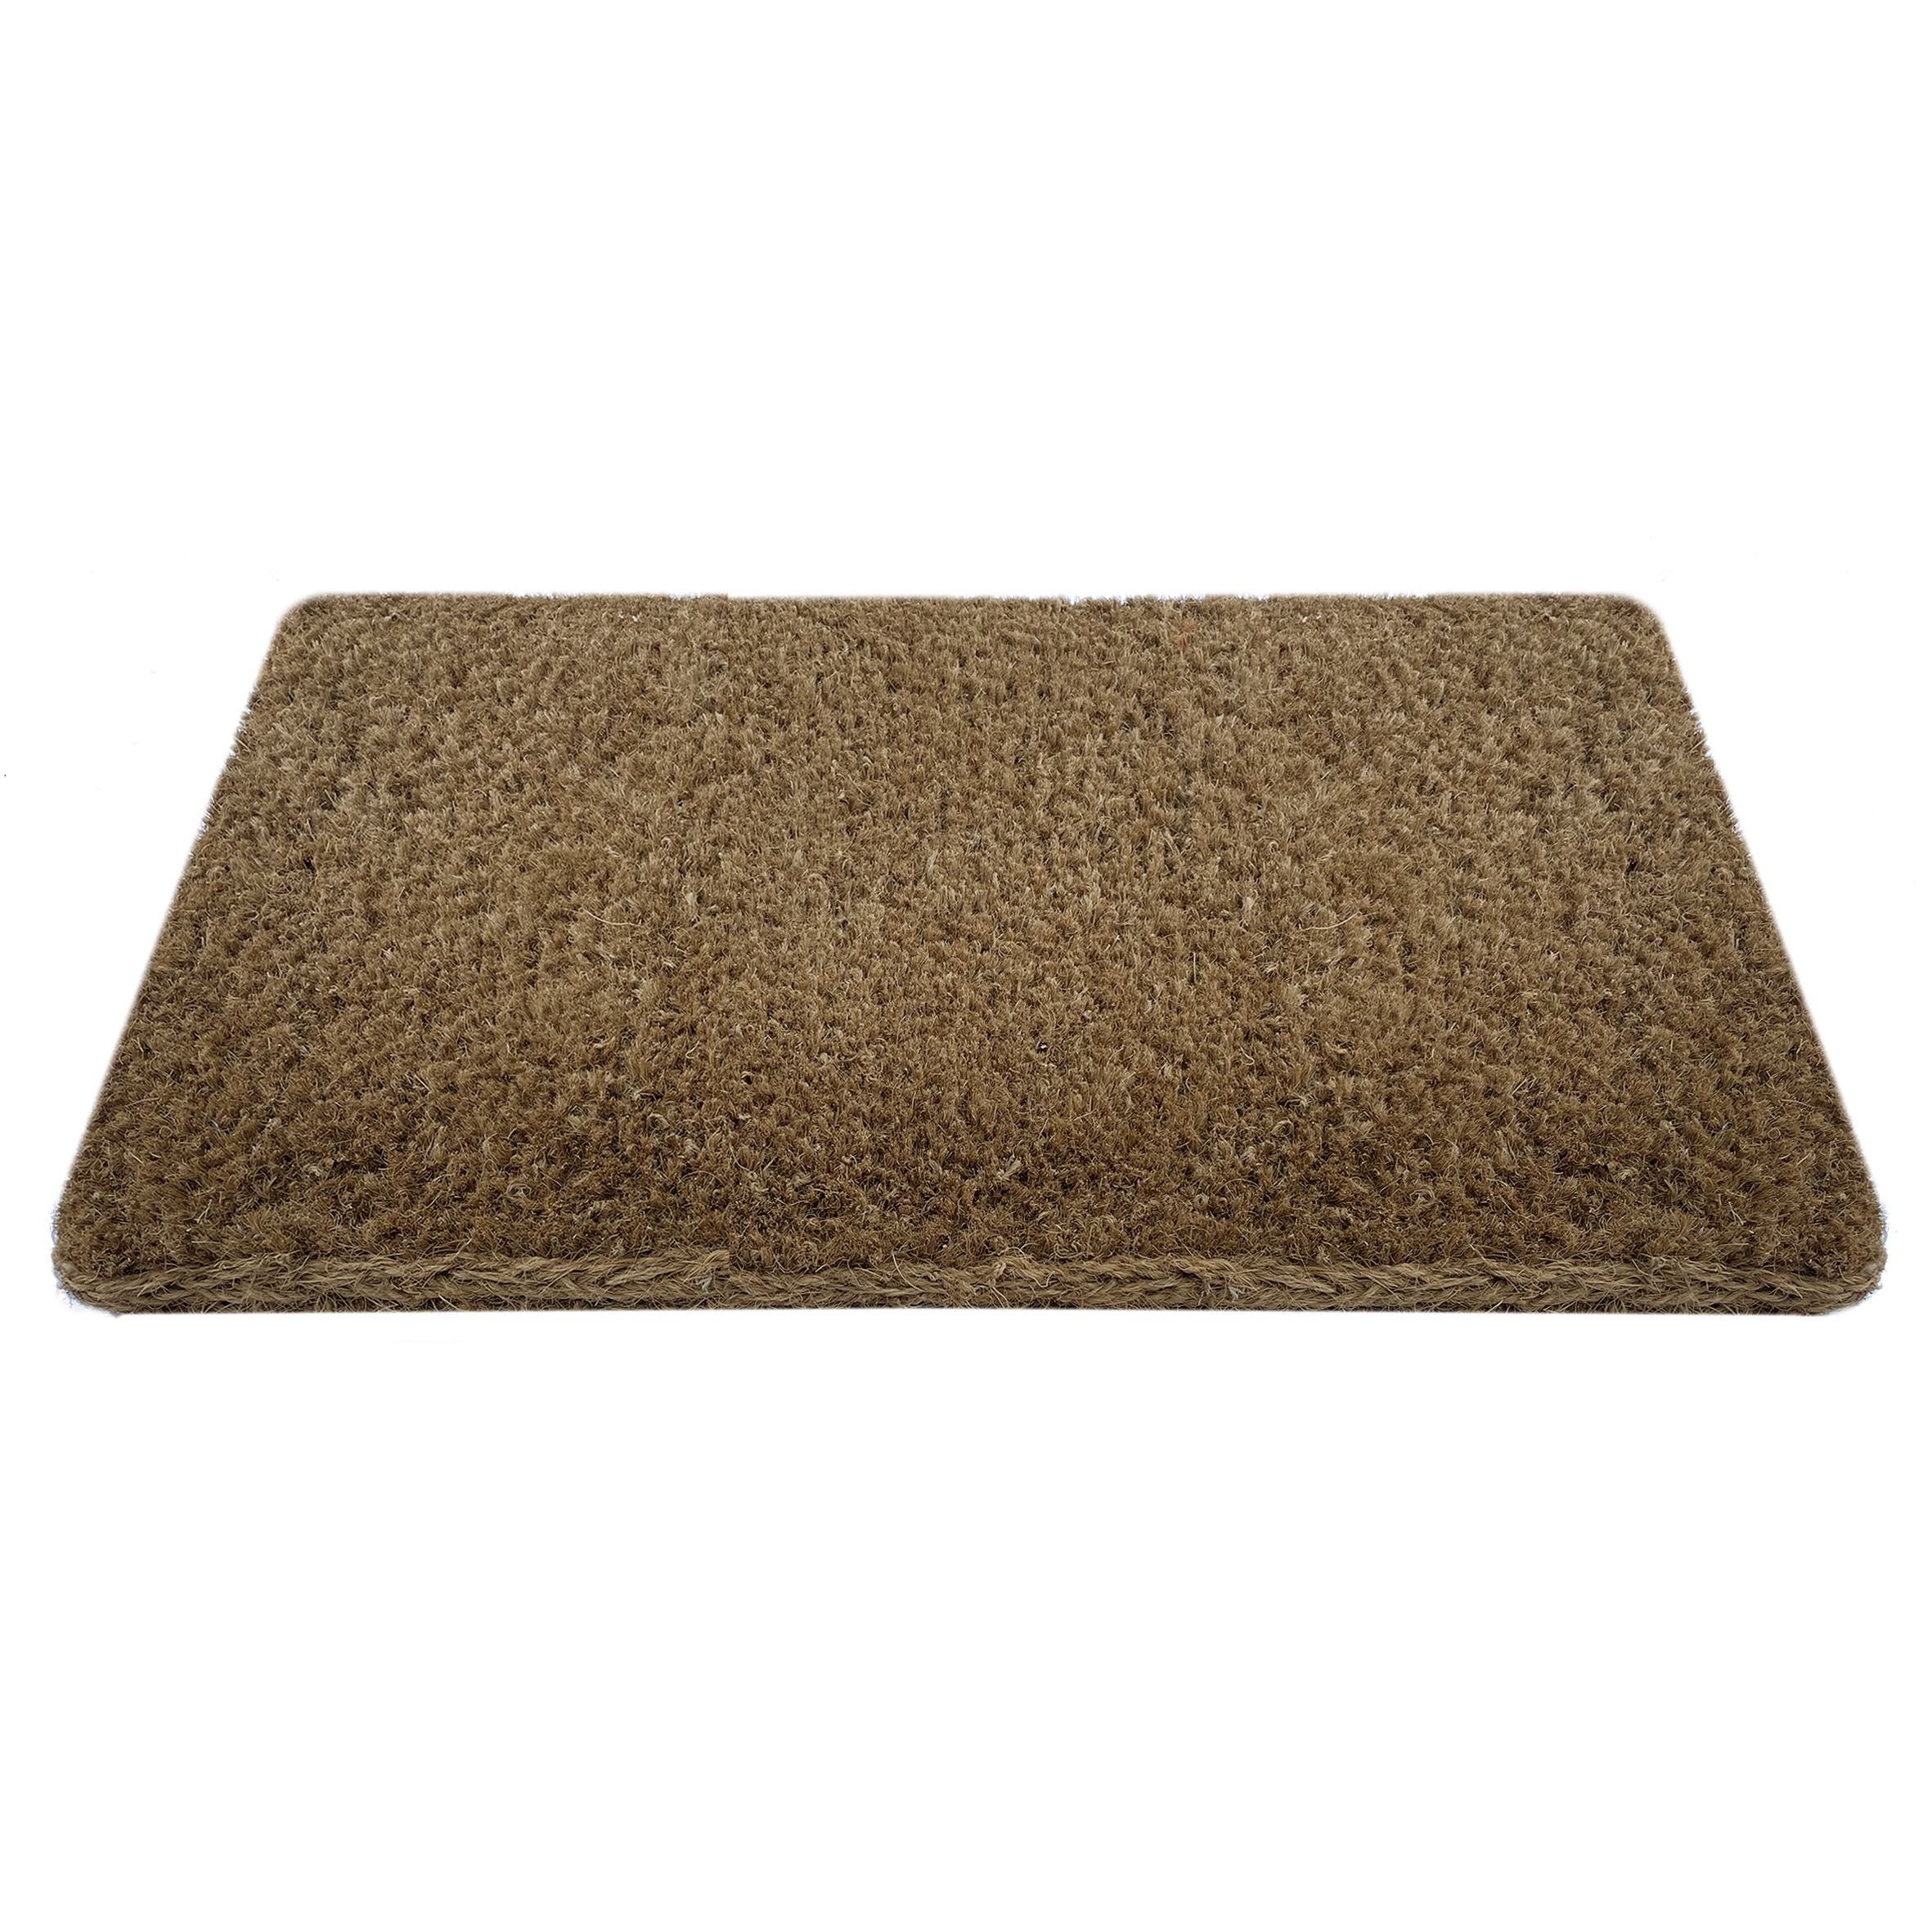 Kersey Brown Plain Heavy duty Door mat, 100cm x 60cm